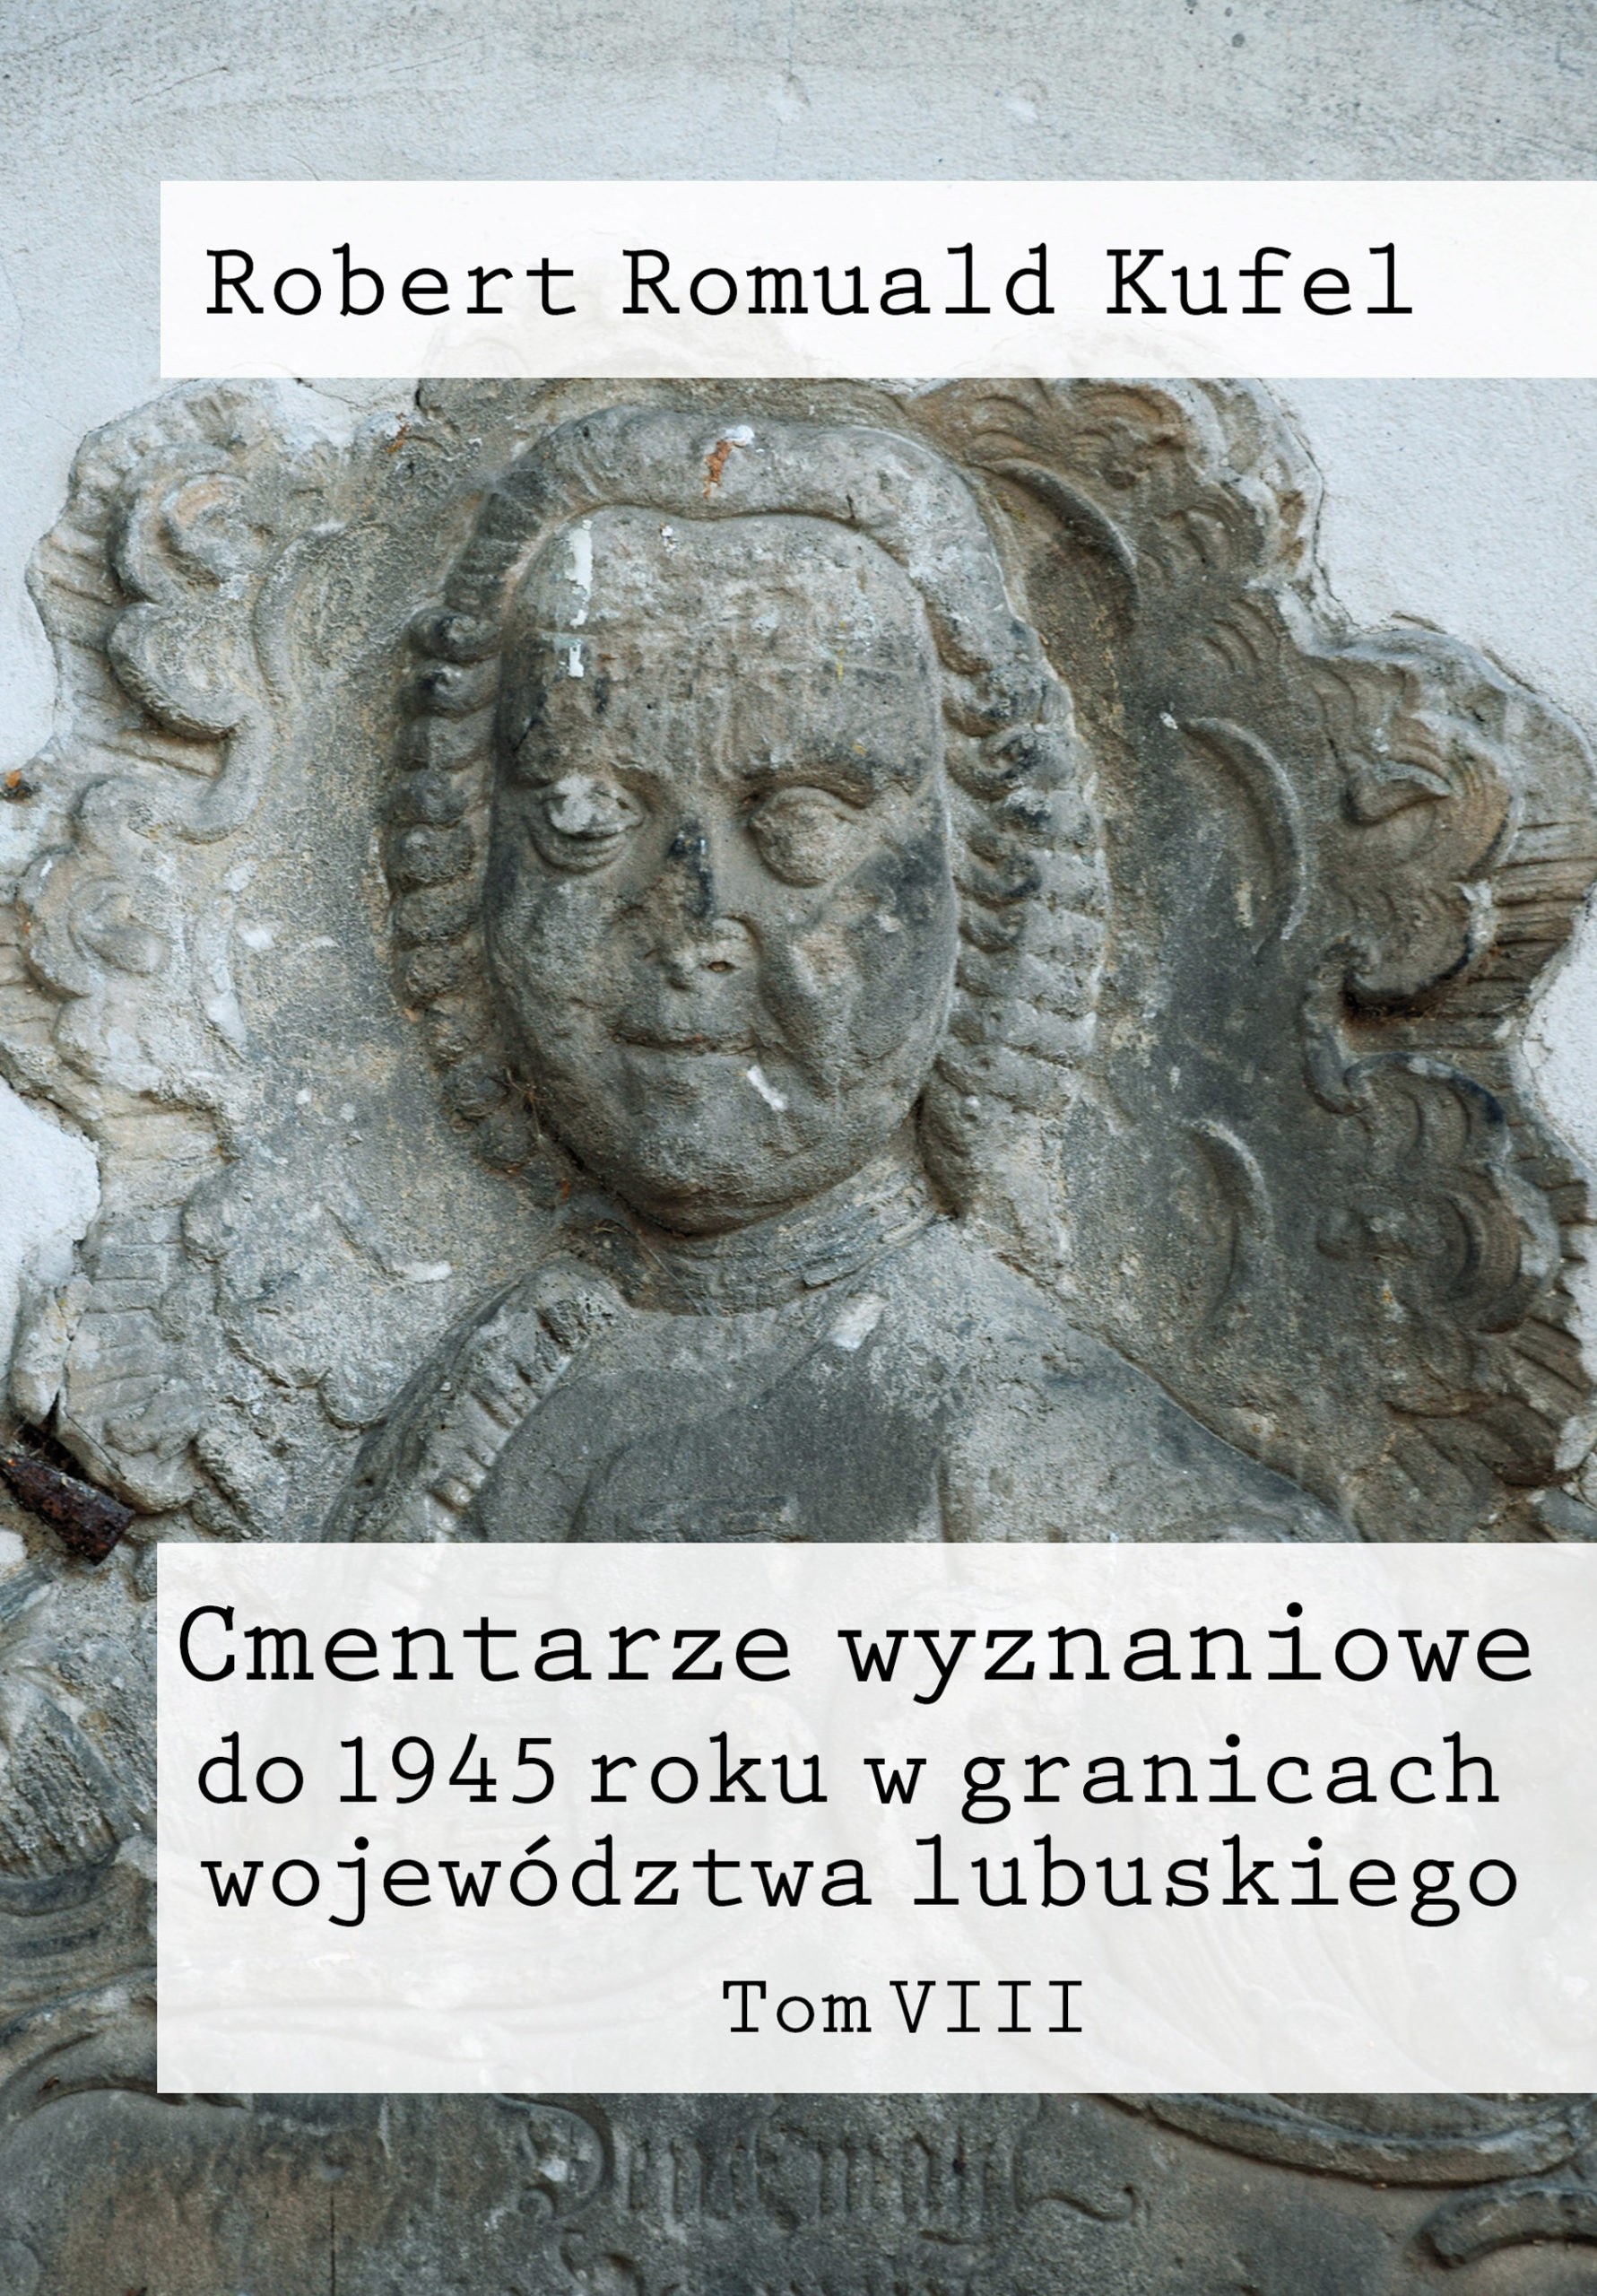 Robert Romuald Kufel „Cmentarze wyznaniowe do 1945 roku w granicach województwa lubuskiego” Tom VIII